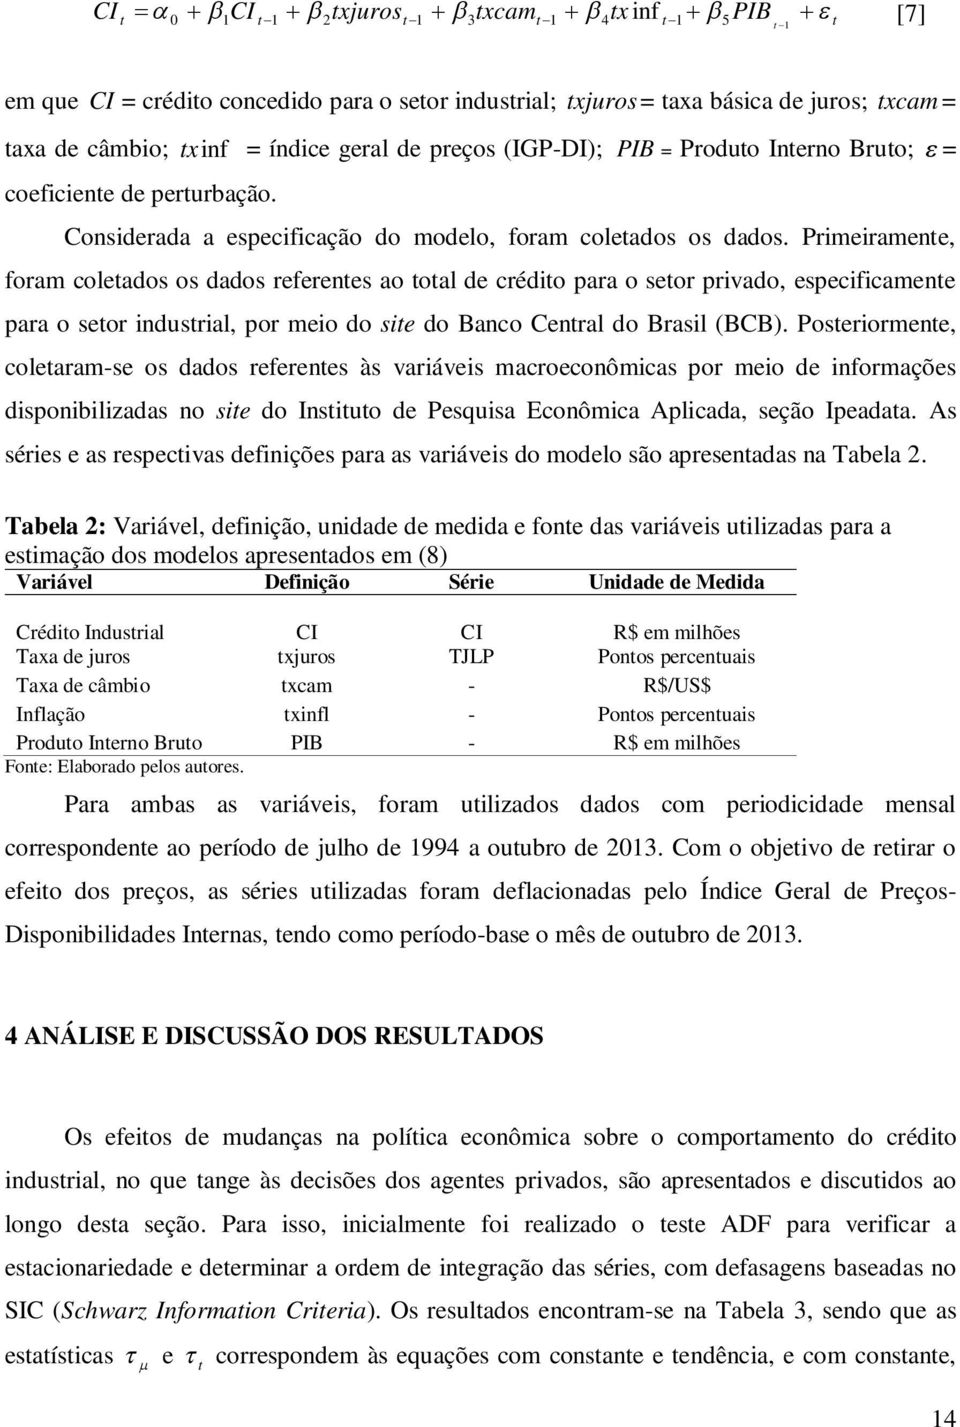 Primeiramene, foram coleados os dados referenes ao oal de crédio para o seor privado, especificamene para o seor indusrial, por meio do sie do Banco Cenral do Brasil (BCB).